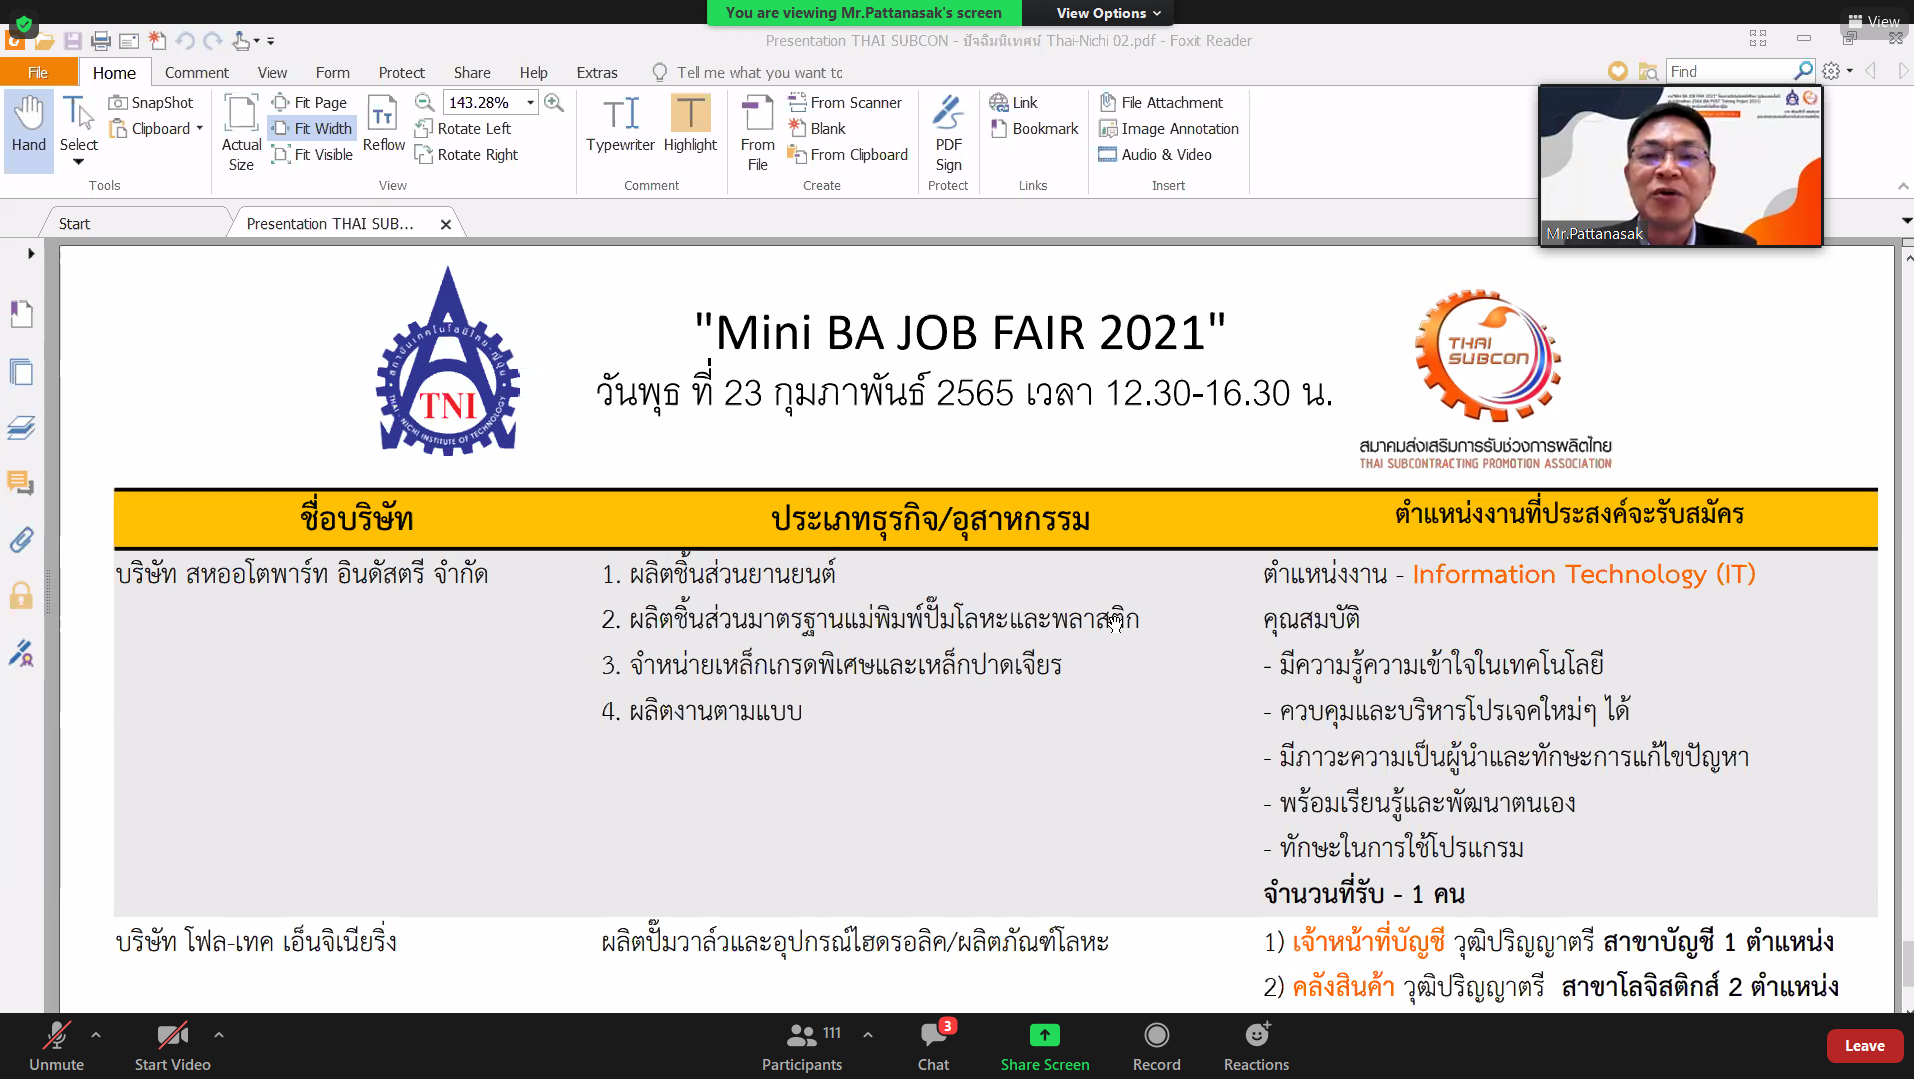 Thai Subcon พา บริษัทสมาชิกฯ เข้าร่วม งาน Mini BA JOB FAIR 2021 โครงการปัจฉิมนิเทศนักศึกษา